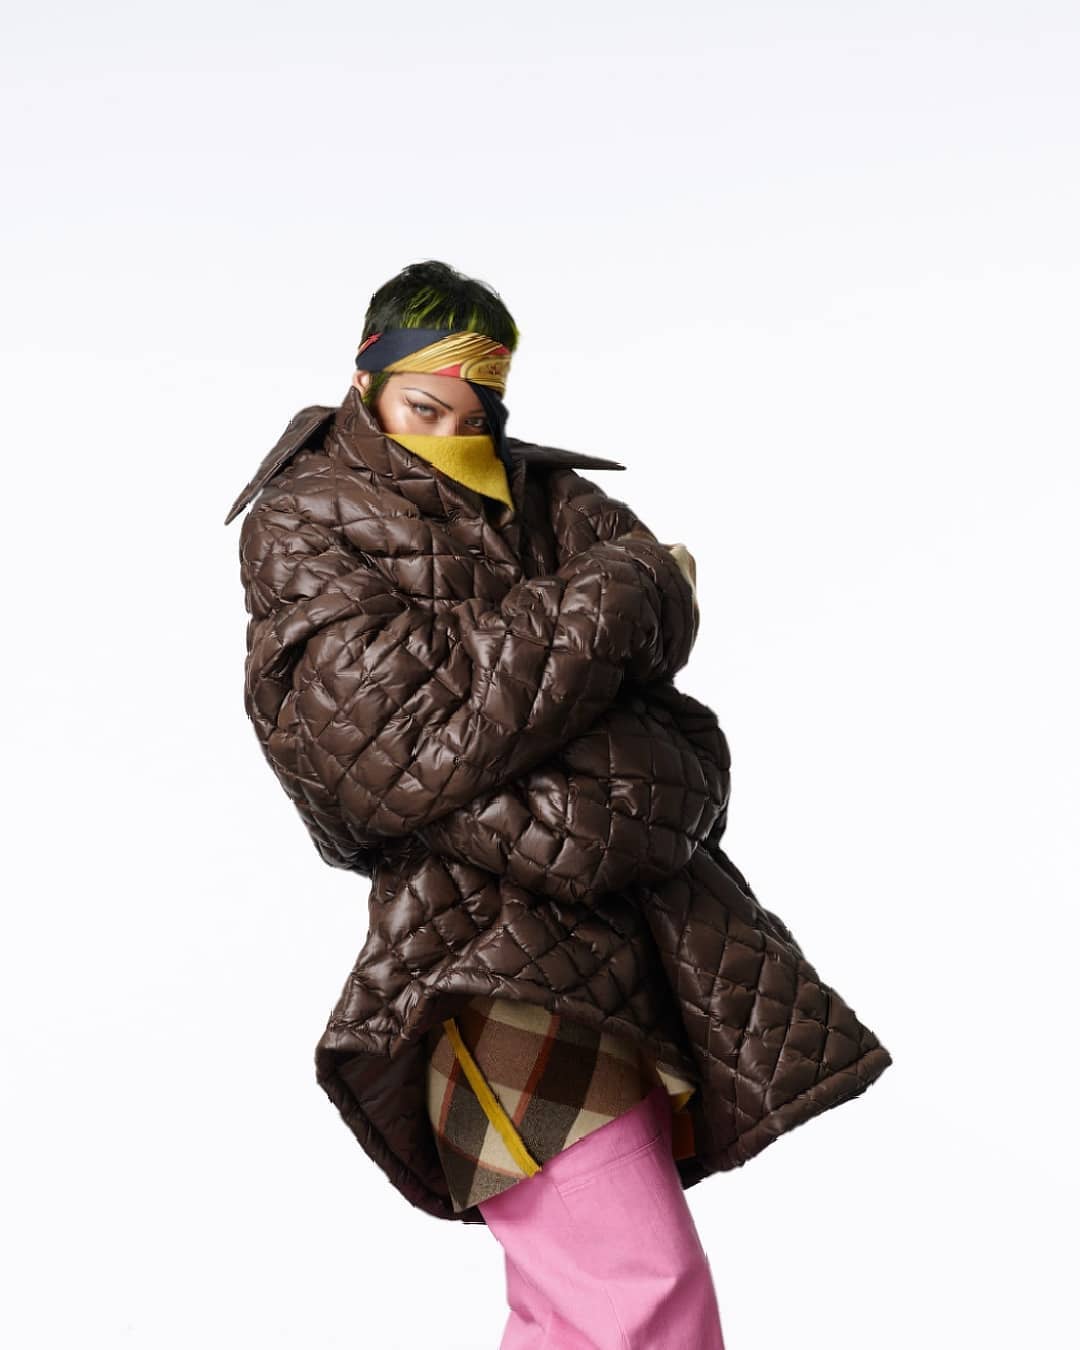 Певица Рианна снялась в стильной фотосессии для Vogue